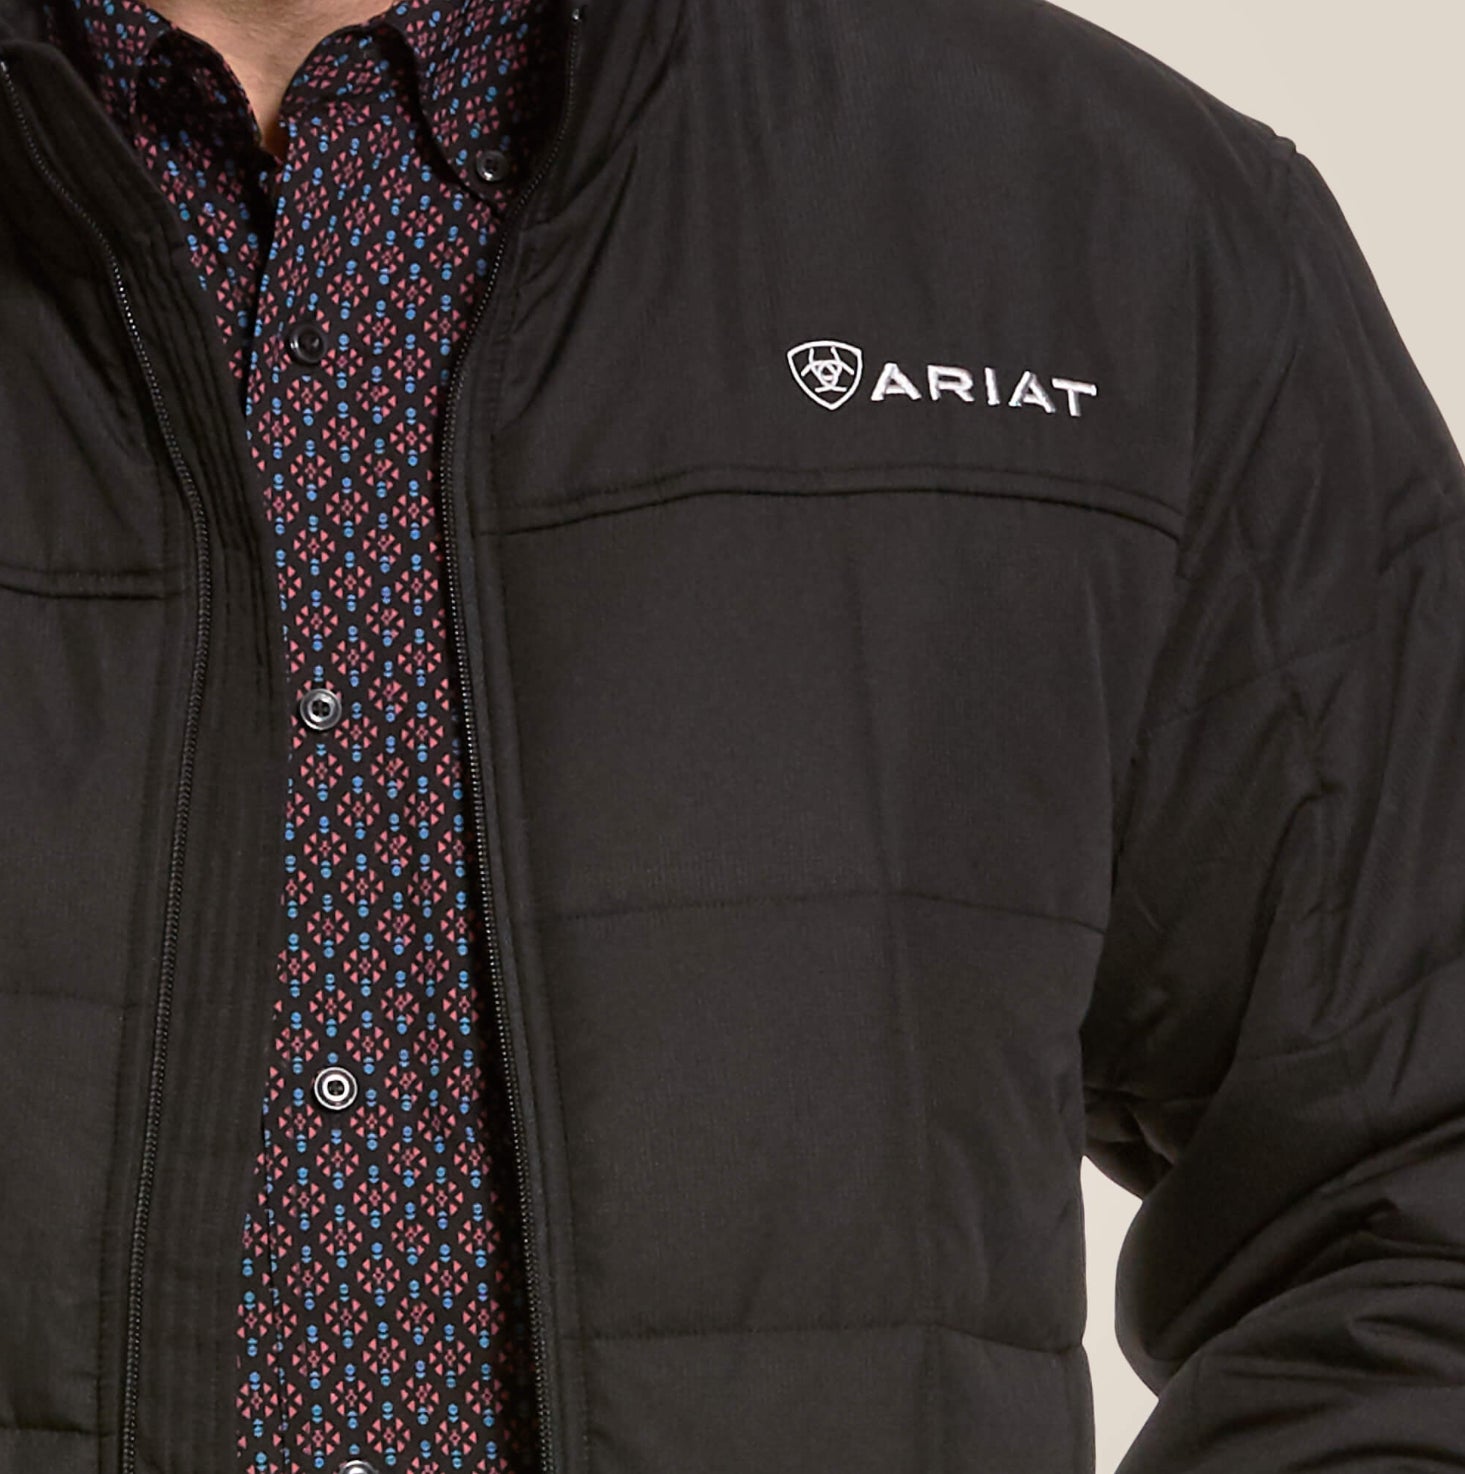 Men’s Ariat Crius Insulated jacket